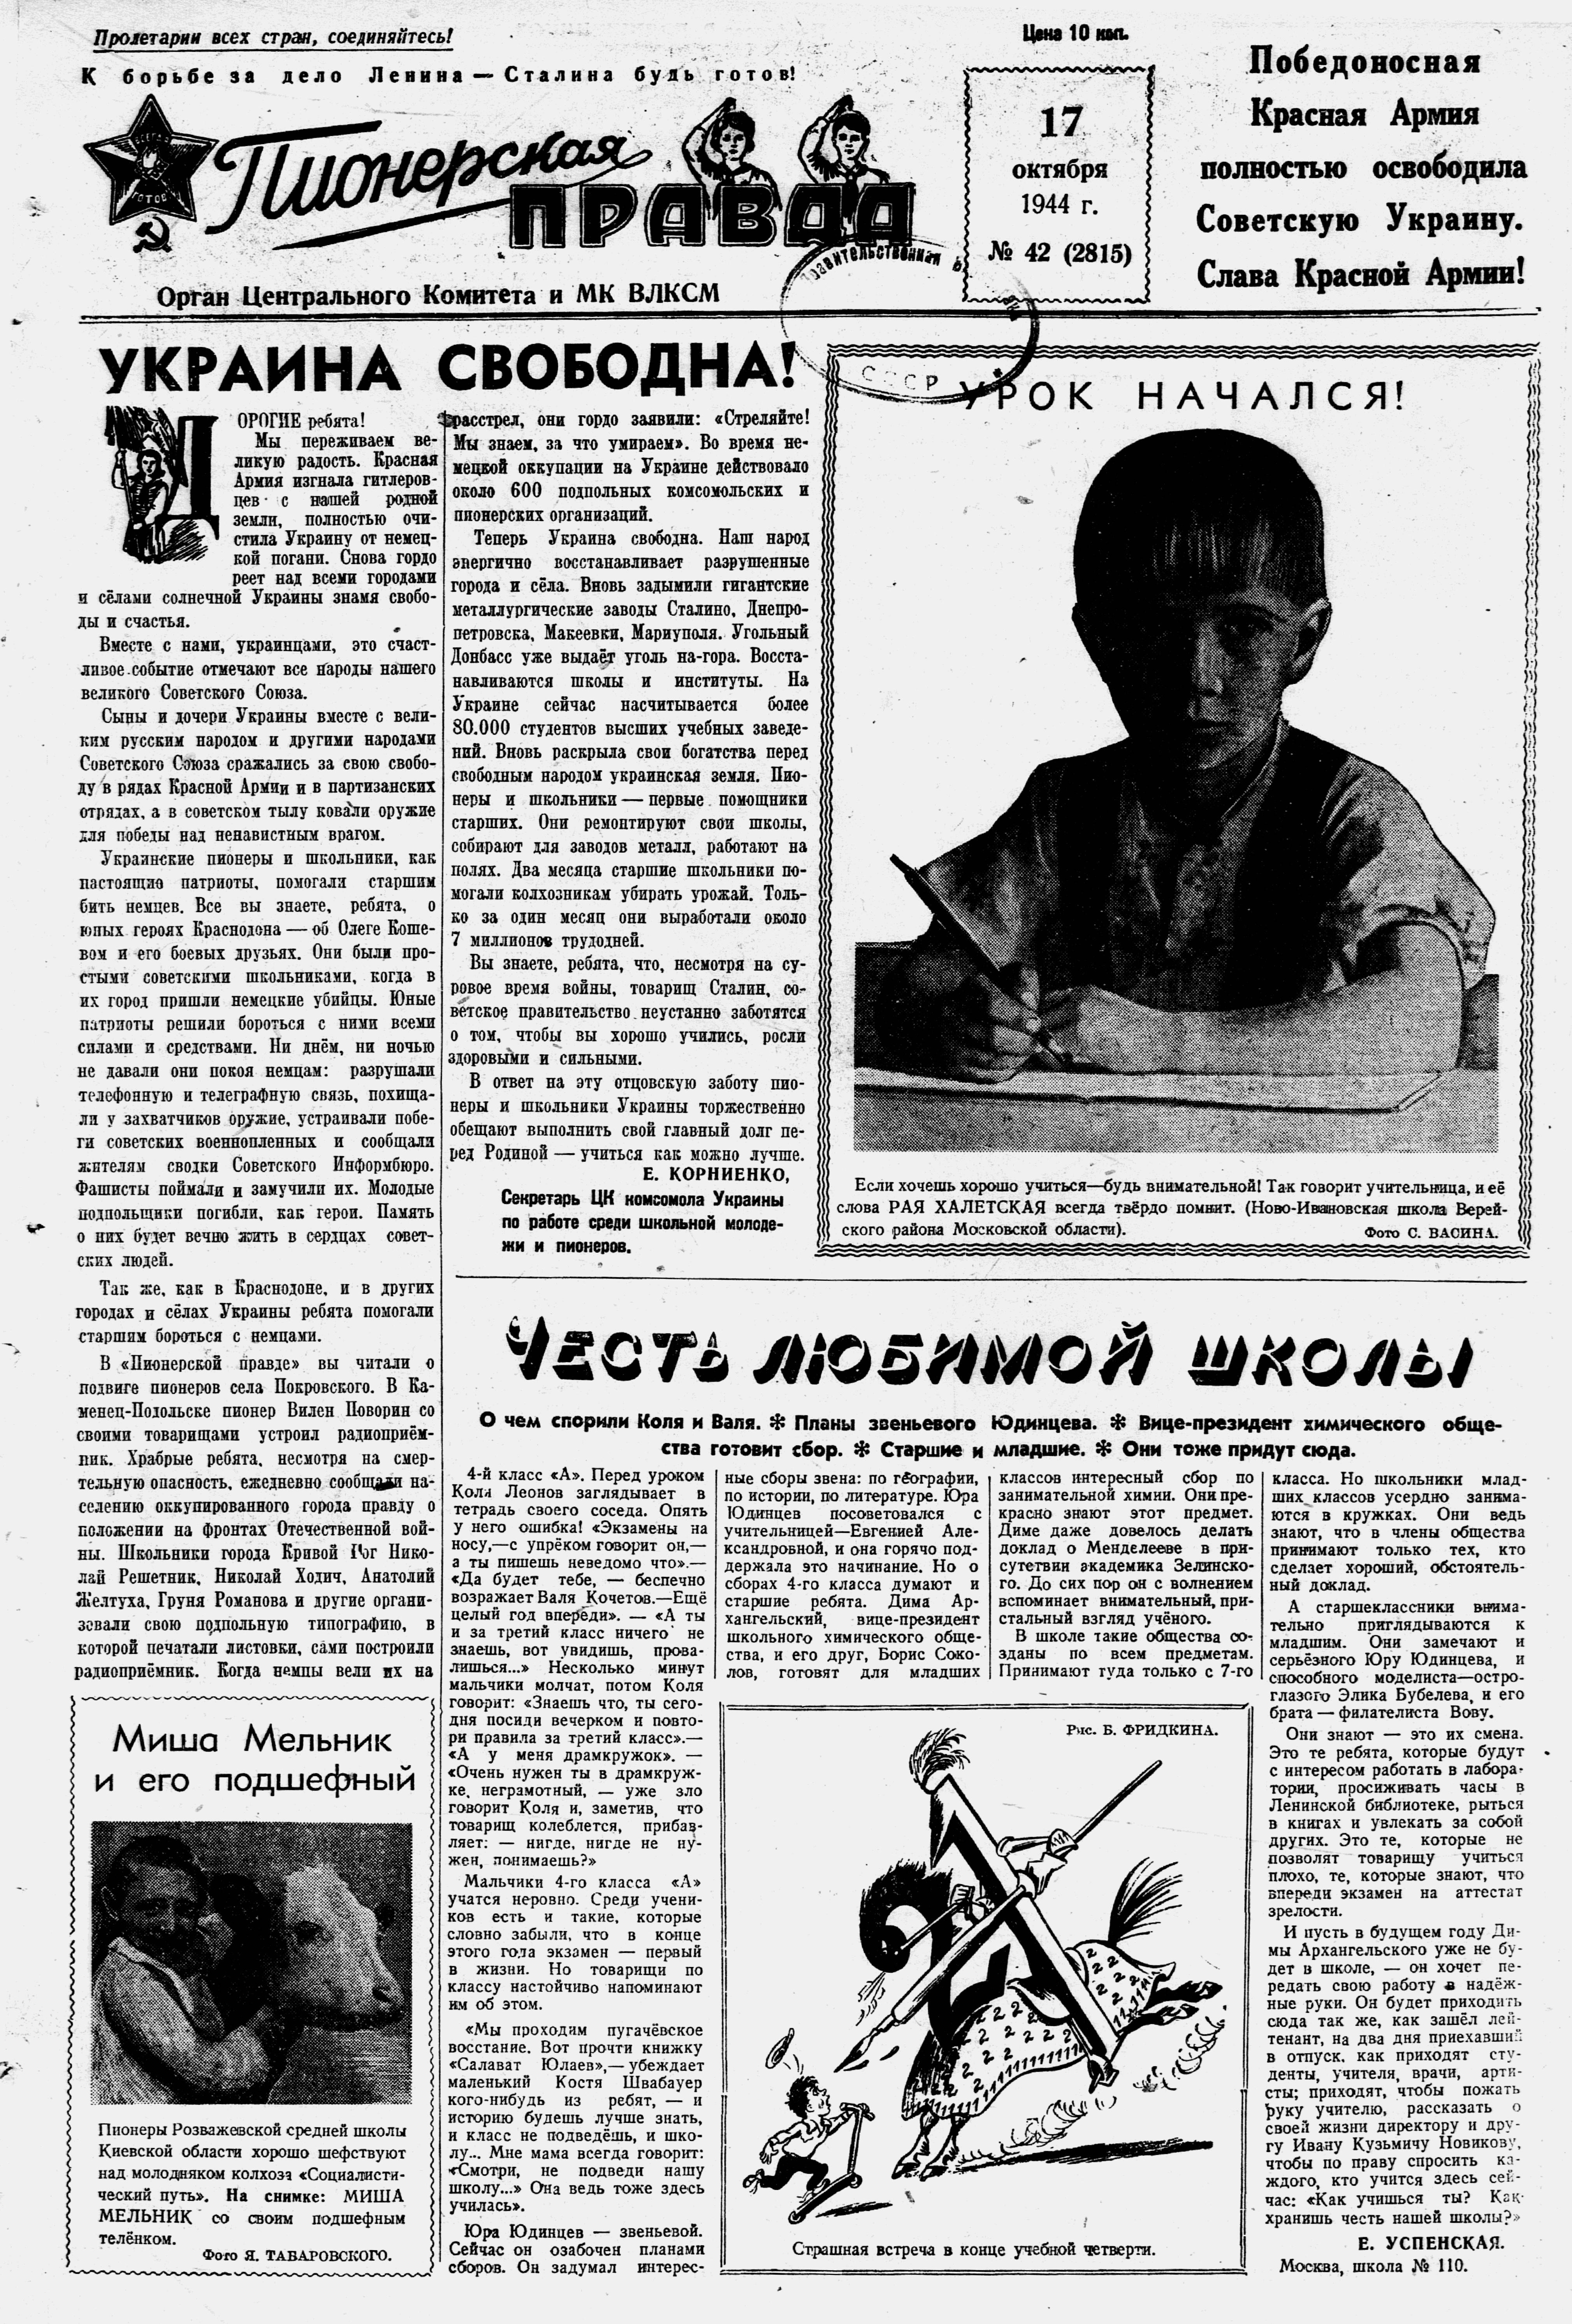 Пионерская правда. 1944. № 042 (2815): Орган ЦК и МК ВЛКСМ - 1944